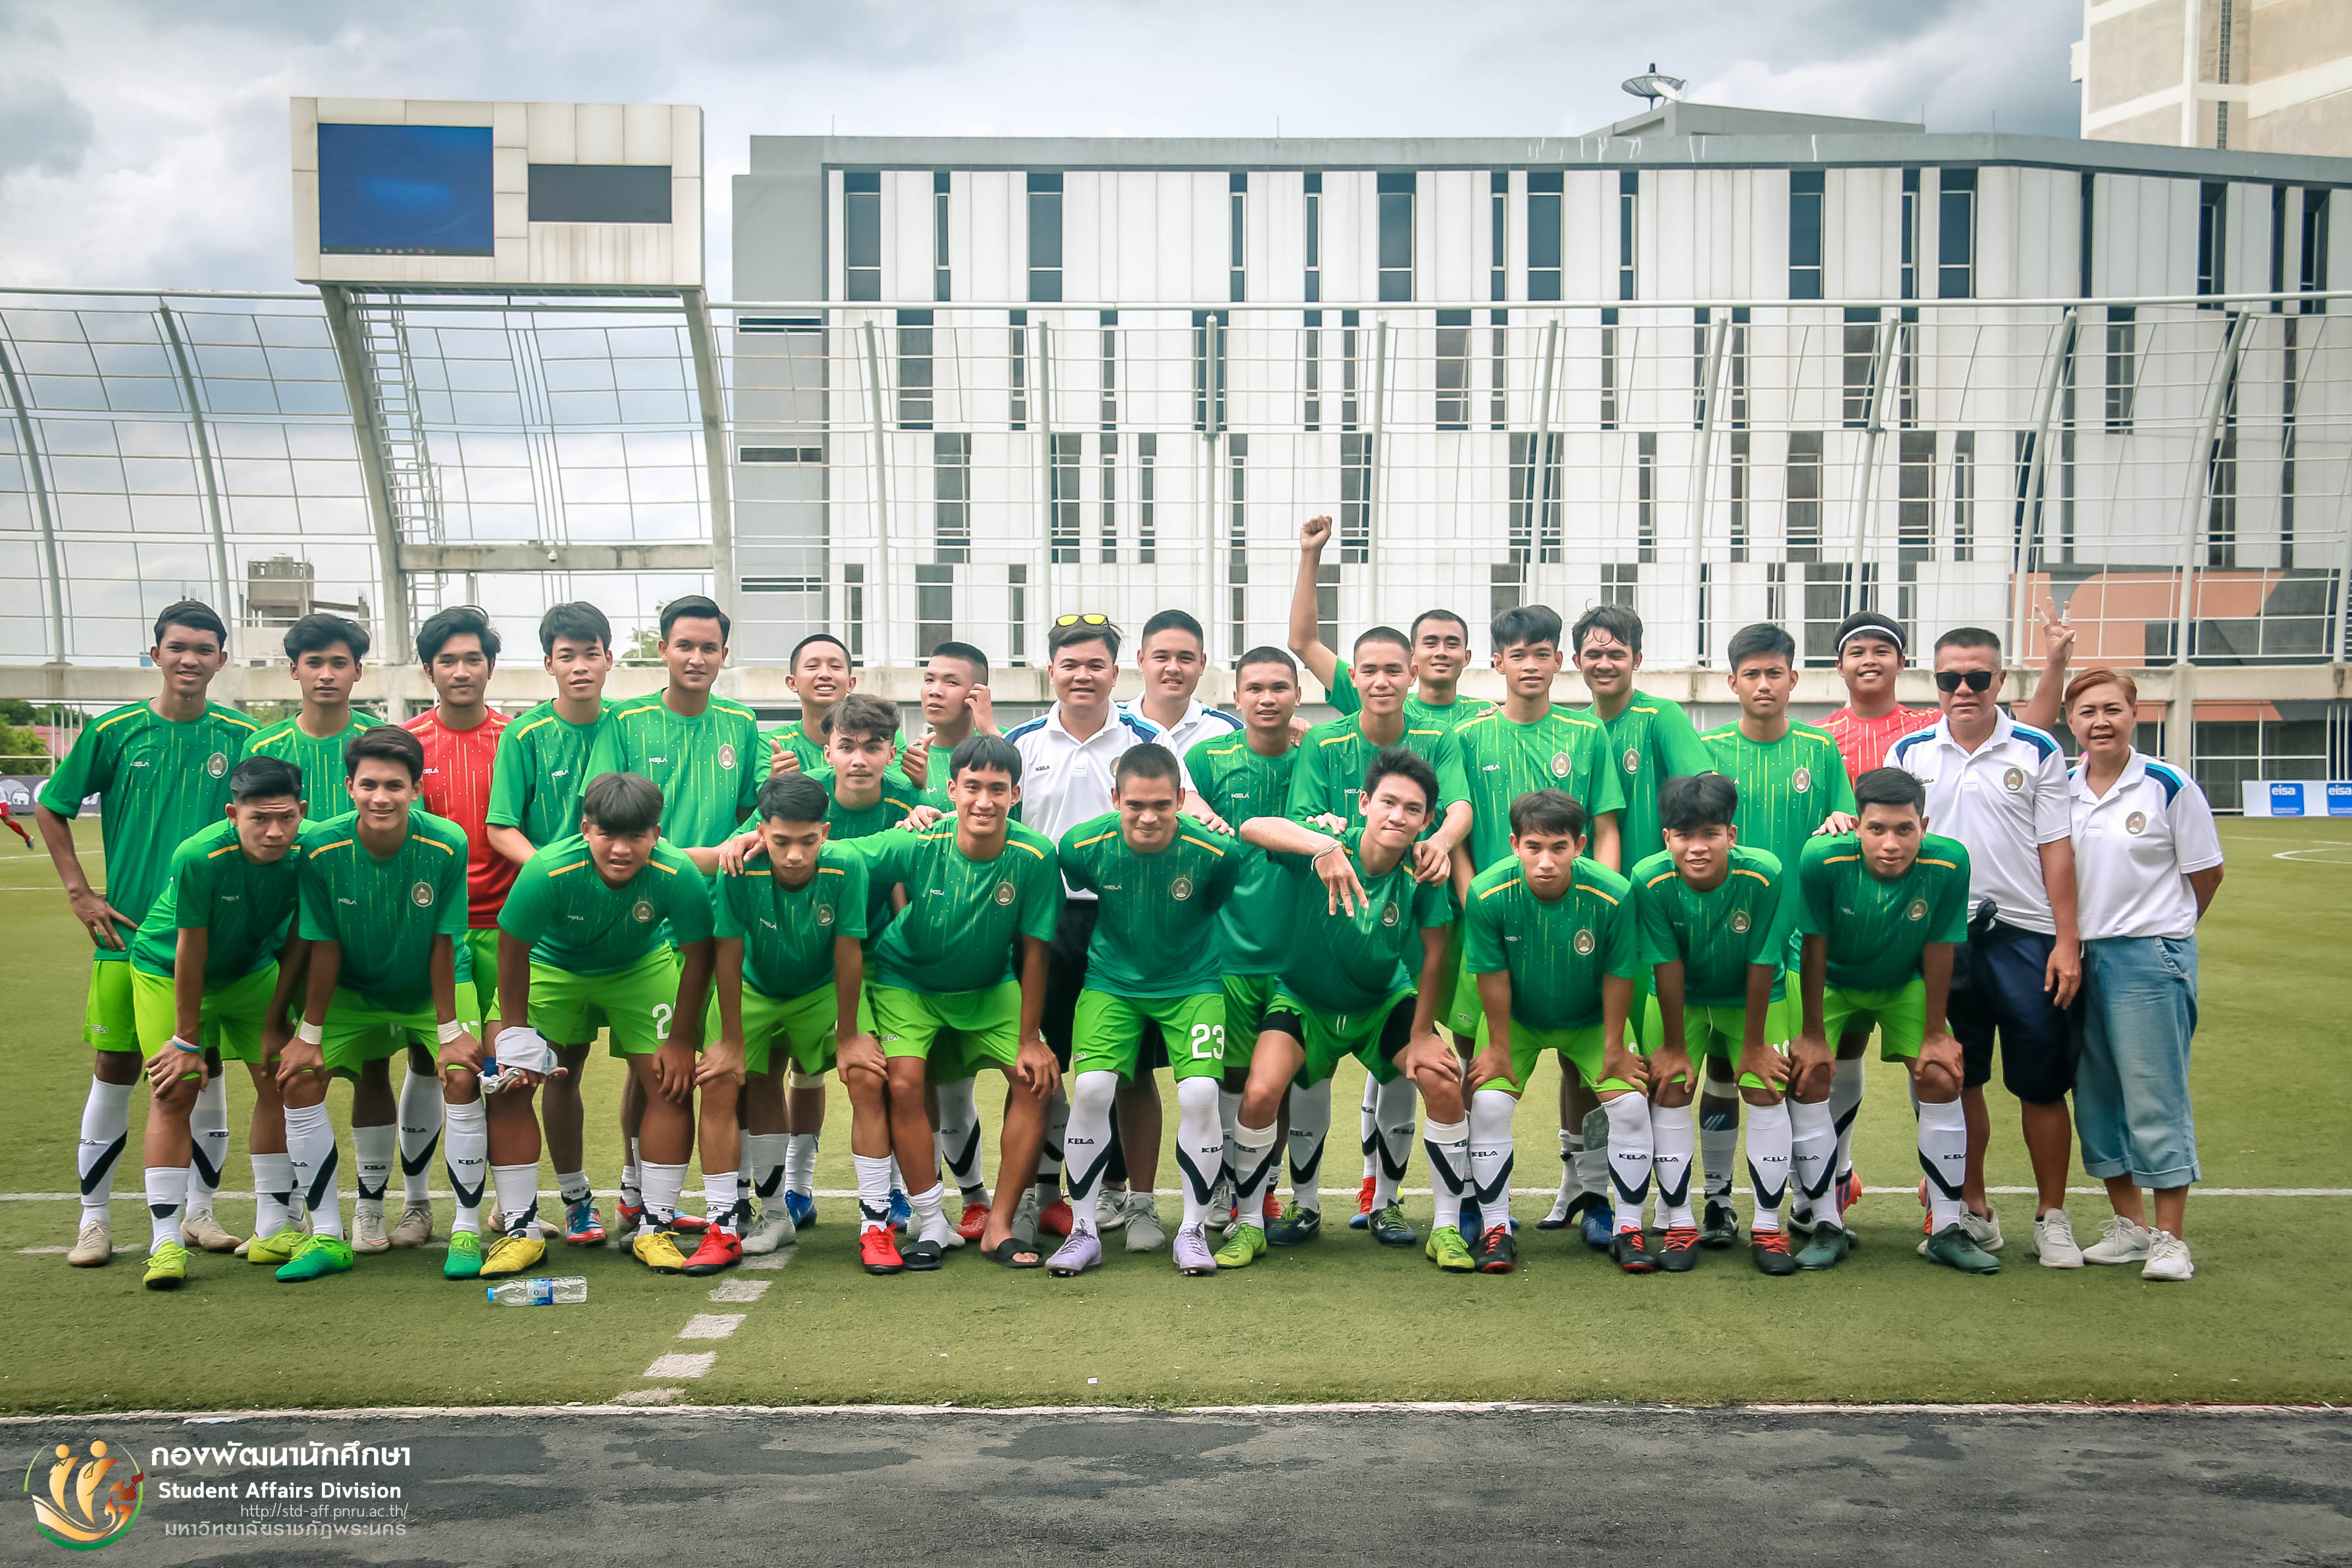 25 กรกฎาคม 2562 การแข่งขันฟุตบอลระดับอุดมศึกษา University Tournament 2019 ณ สนามฟุตบอล (หญ้าเทียม) มหาวิทยาลัยเทคโนโลยีพระจอมเกล้าพระนครเหนือ